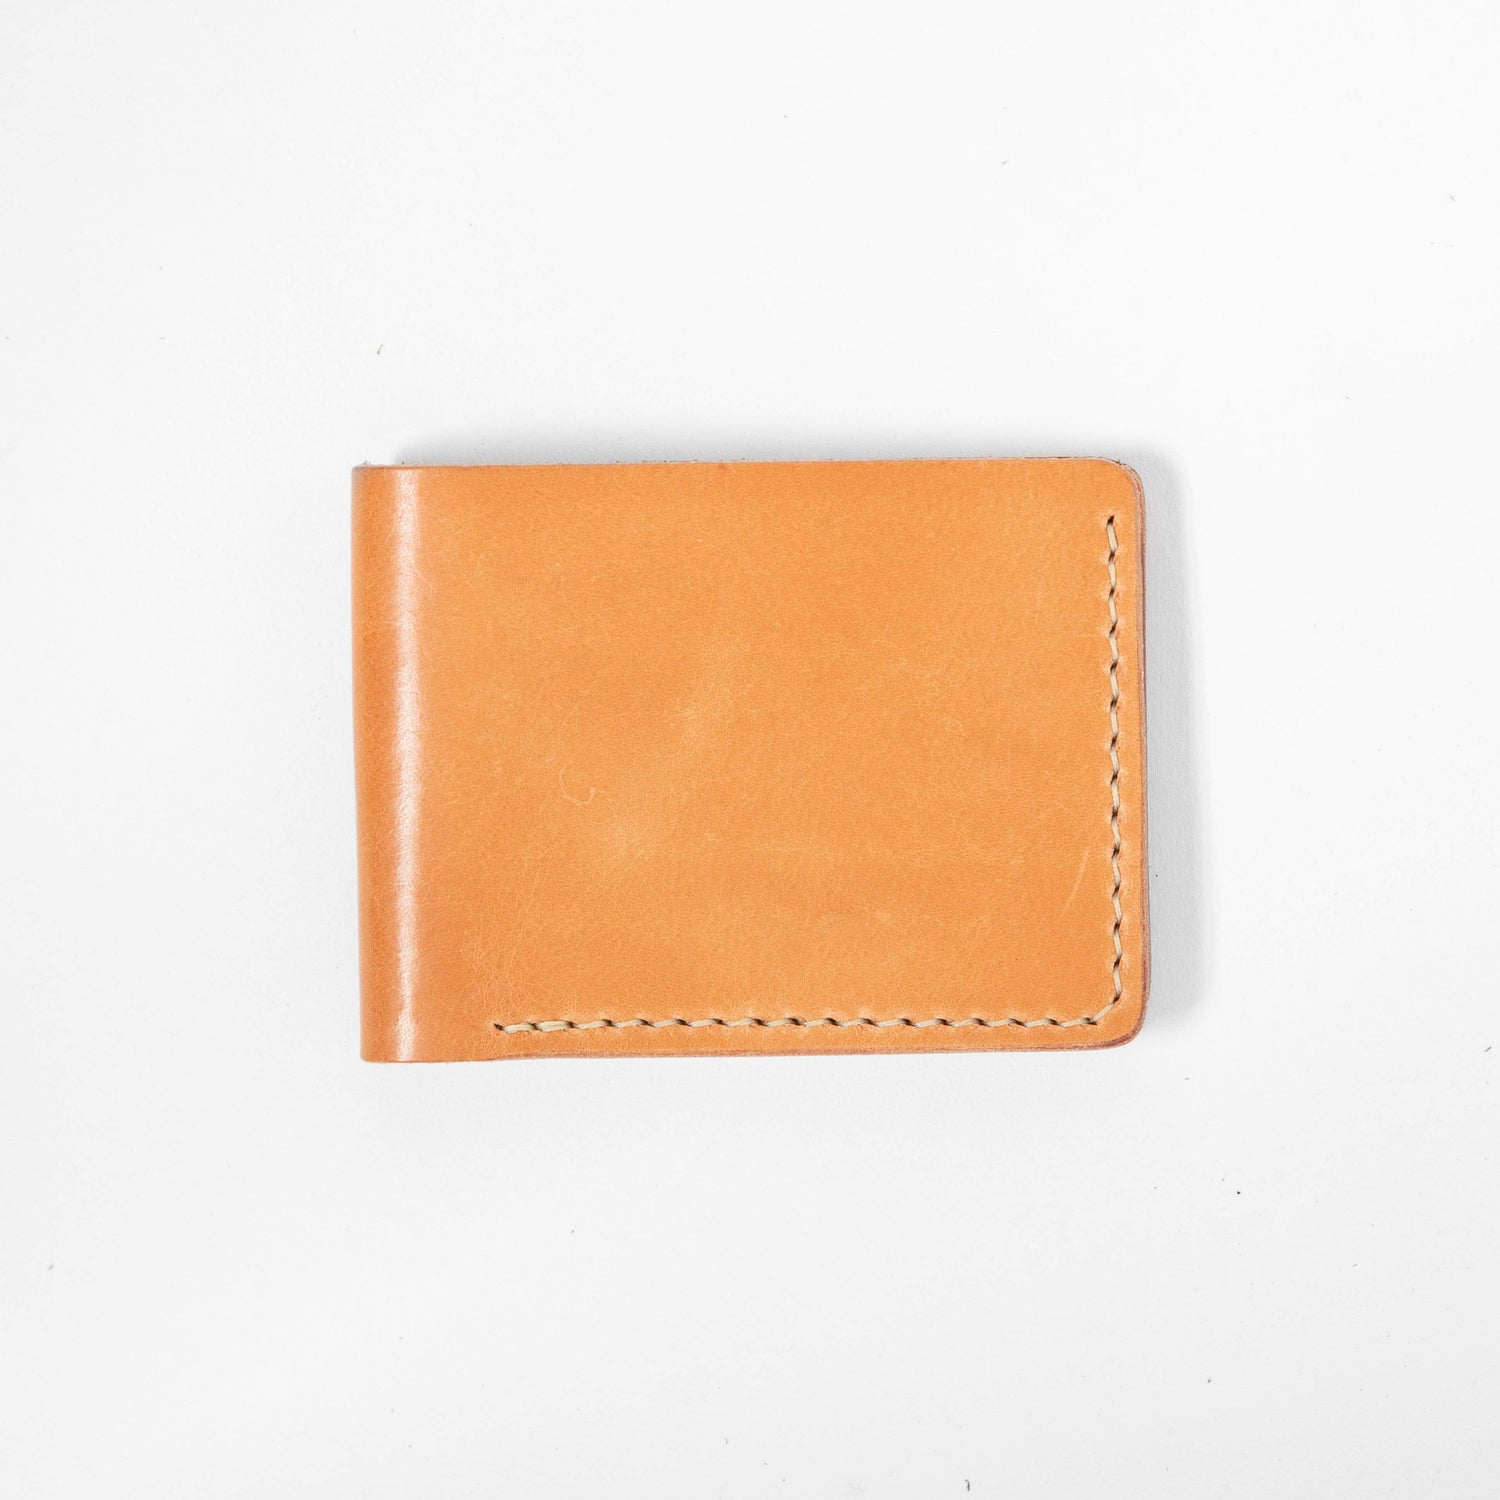 KMM & Co Men's Leather Billfold Wallet